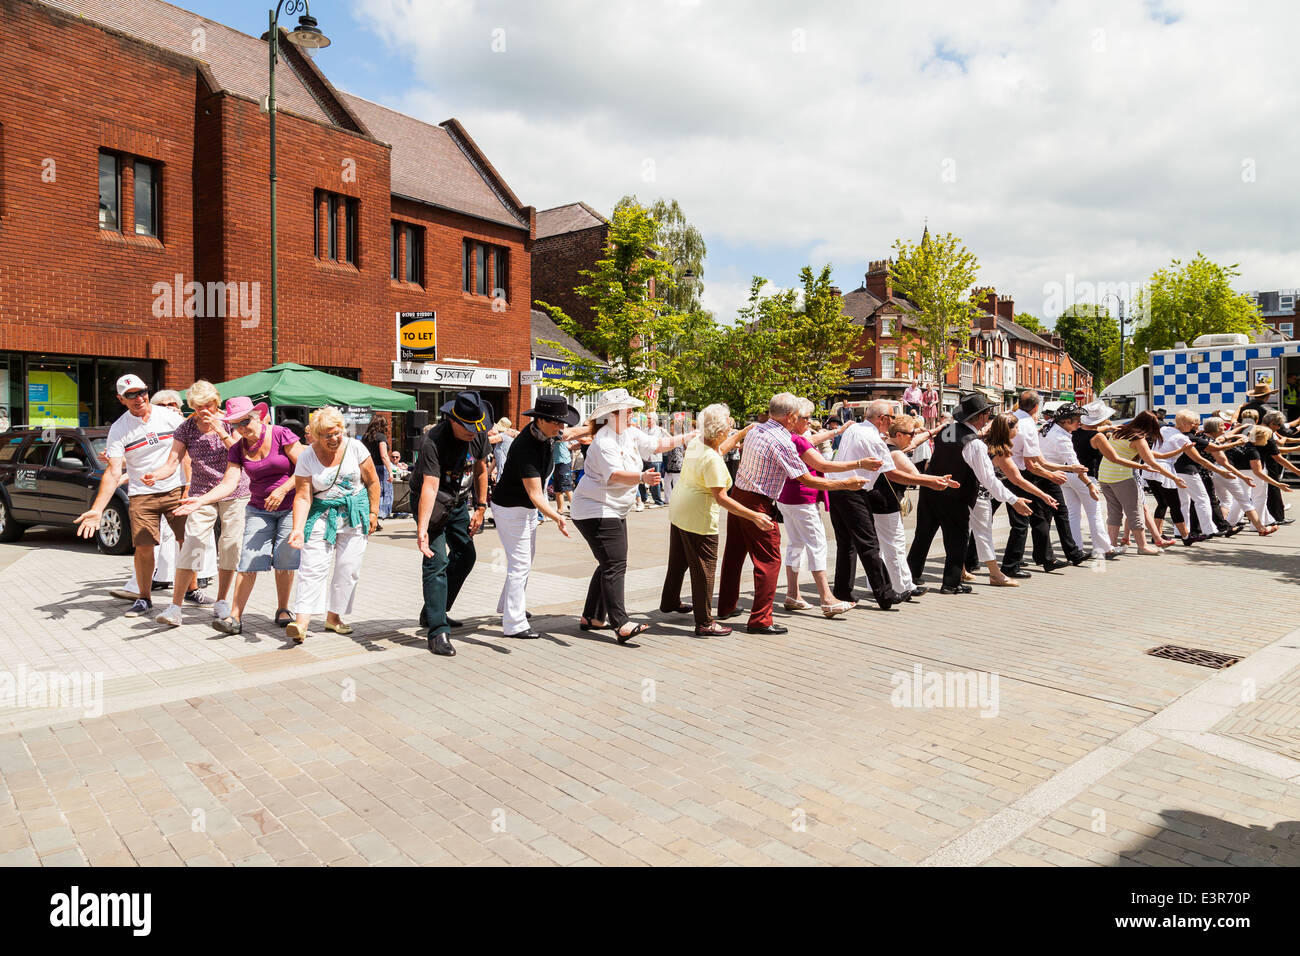 Les gens de danse en ligne à Leek centre-ville. Poireau, Staffordshire, Angleterre, Royaume-Uni. Banque D'Images